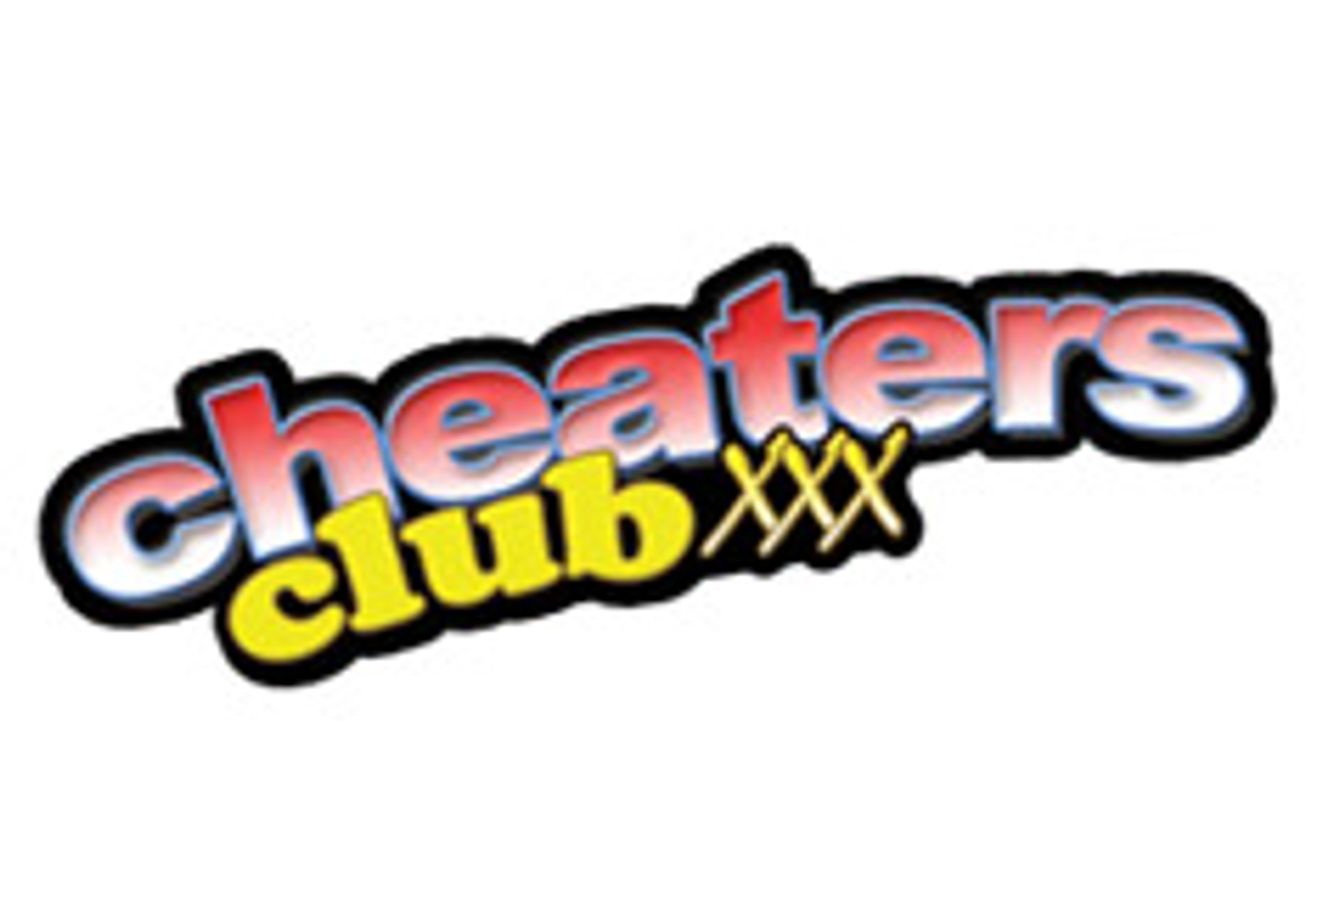 Cheaters Club XXX